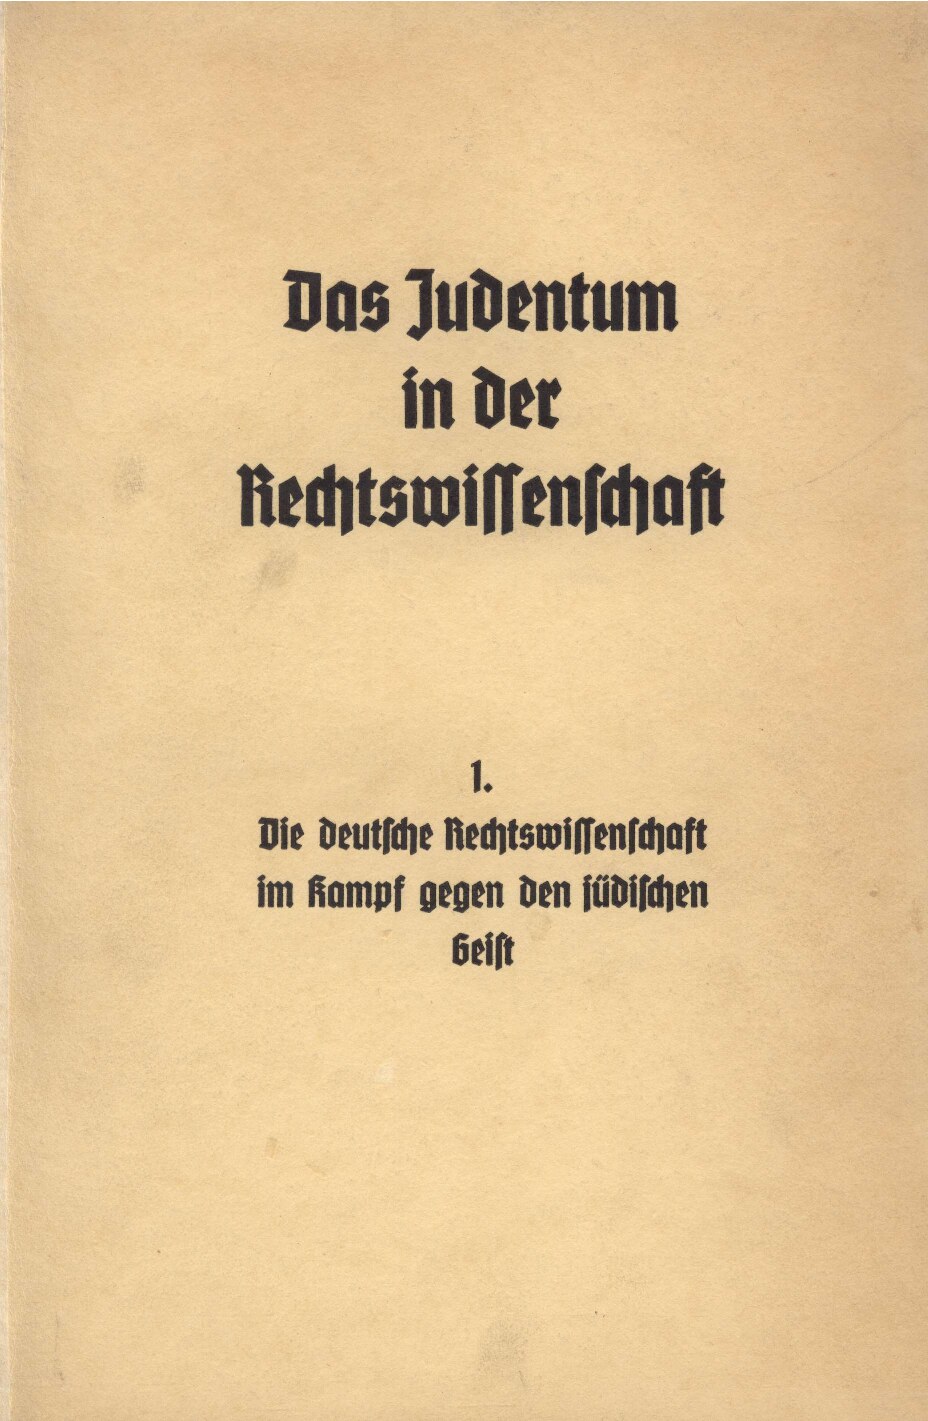 Das Judentum in der Rechtswissenschaft - 1. - Die deutsche Rechtswissenschaft im Kampf gegen den jüdischen Geist (1936, 40 S., Scan, Fraktur)